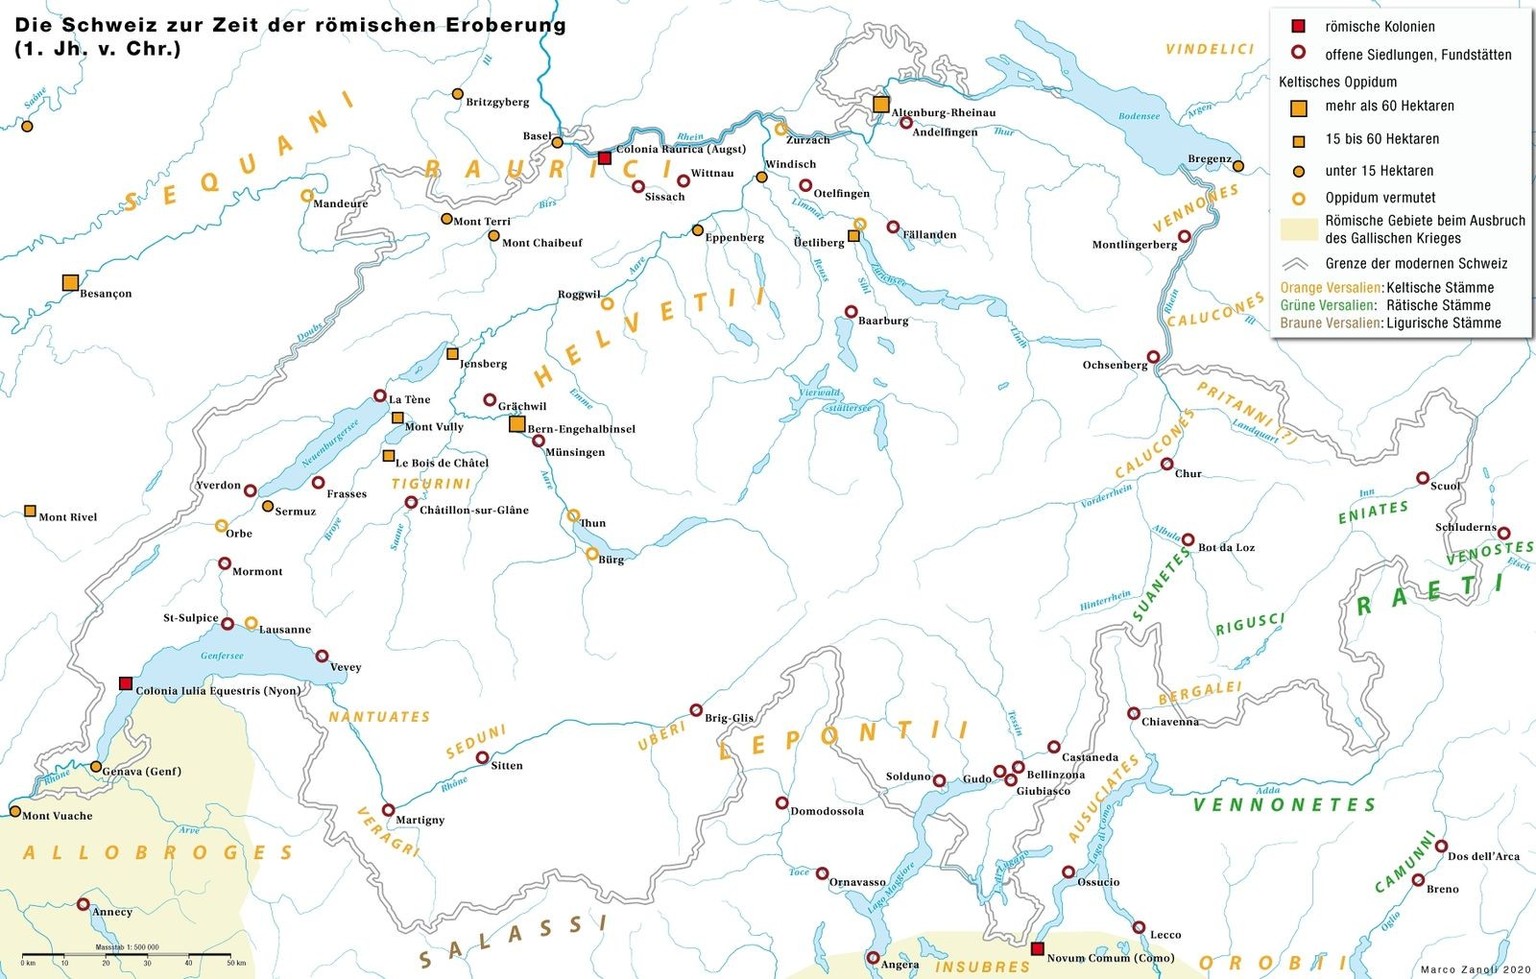 La Suisse au temps de la conquête romaine (Ier siècle av. J.-C.)
https://commons.wikimedia.org/wiki/File:Historische_Karte_CH_Helvet.png